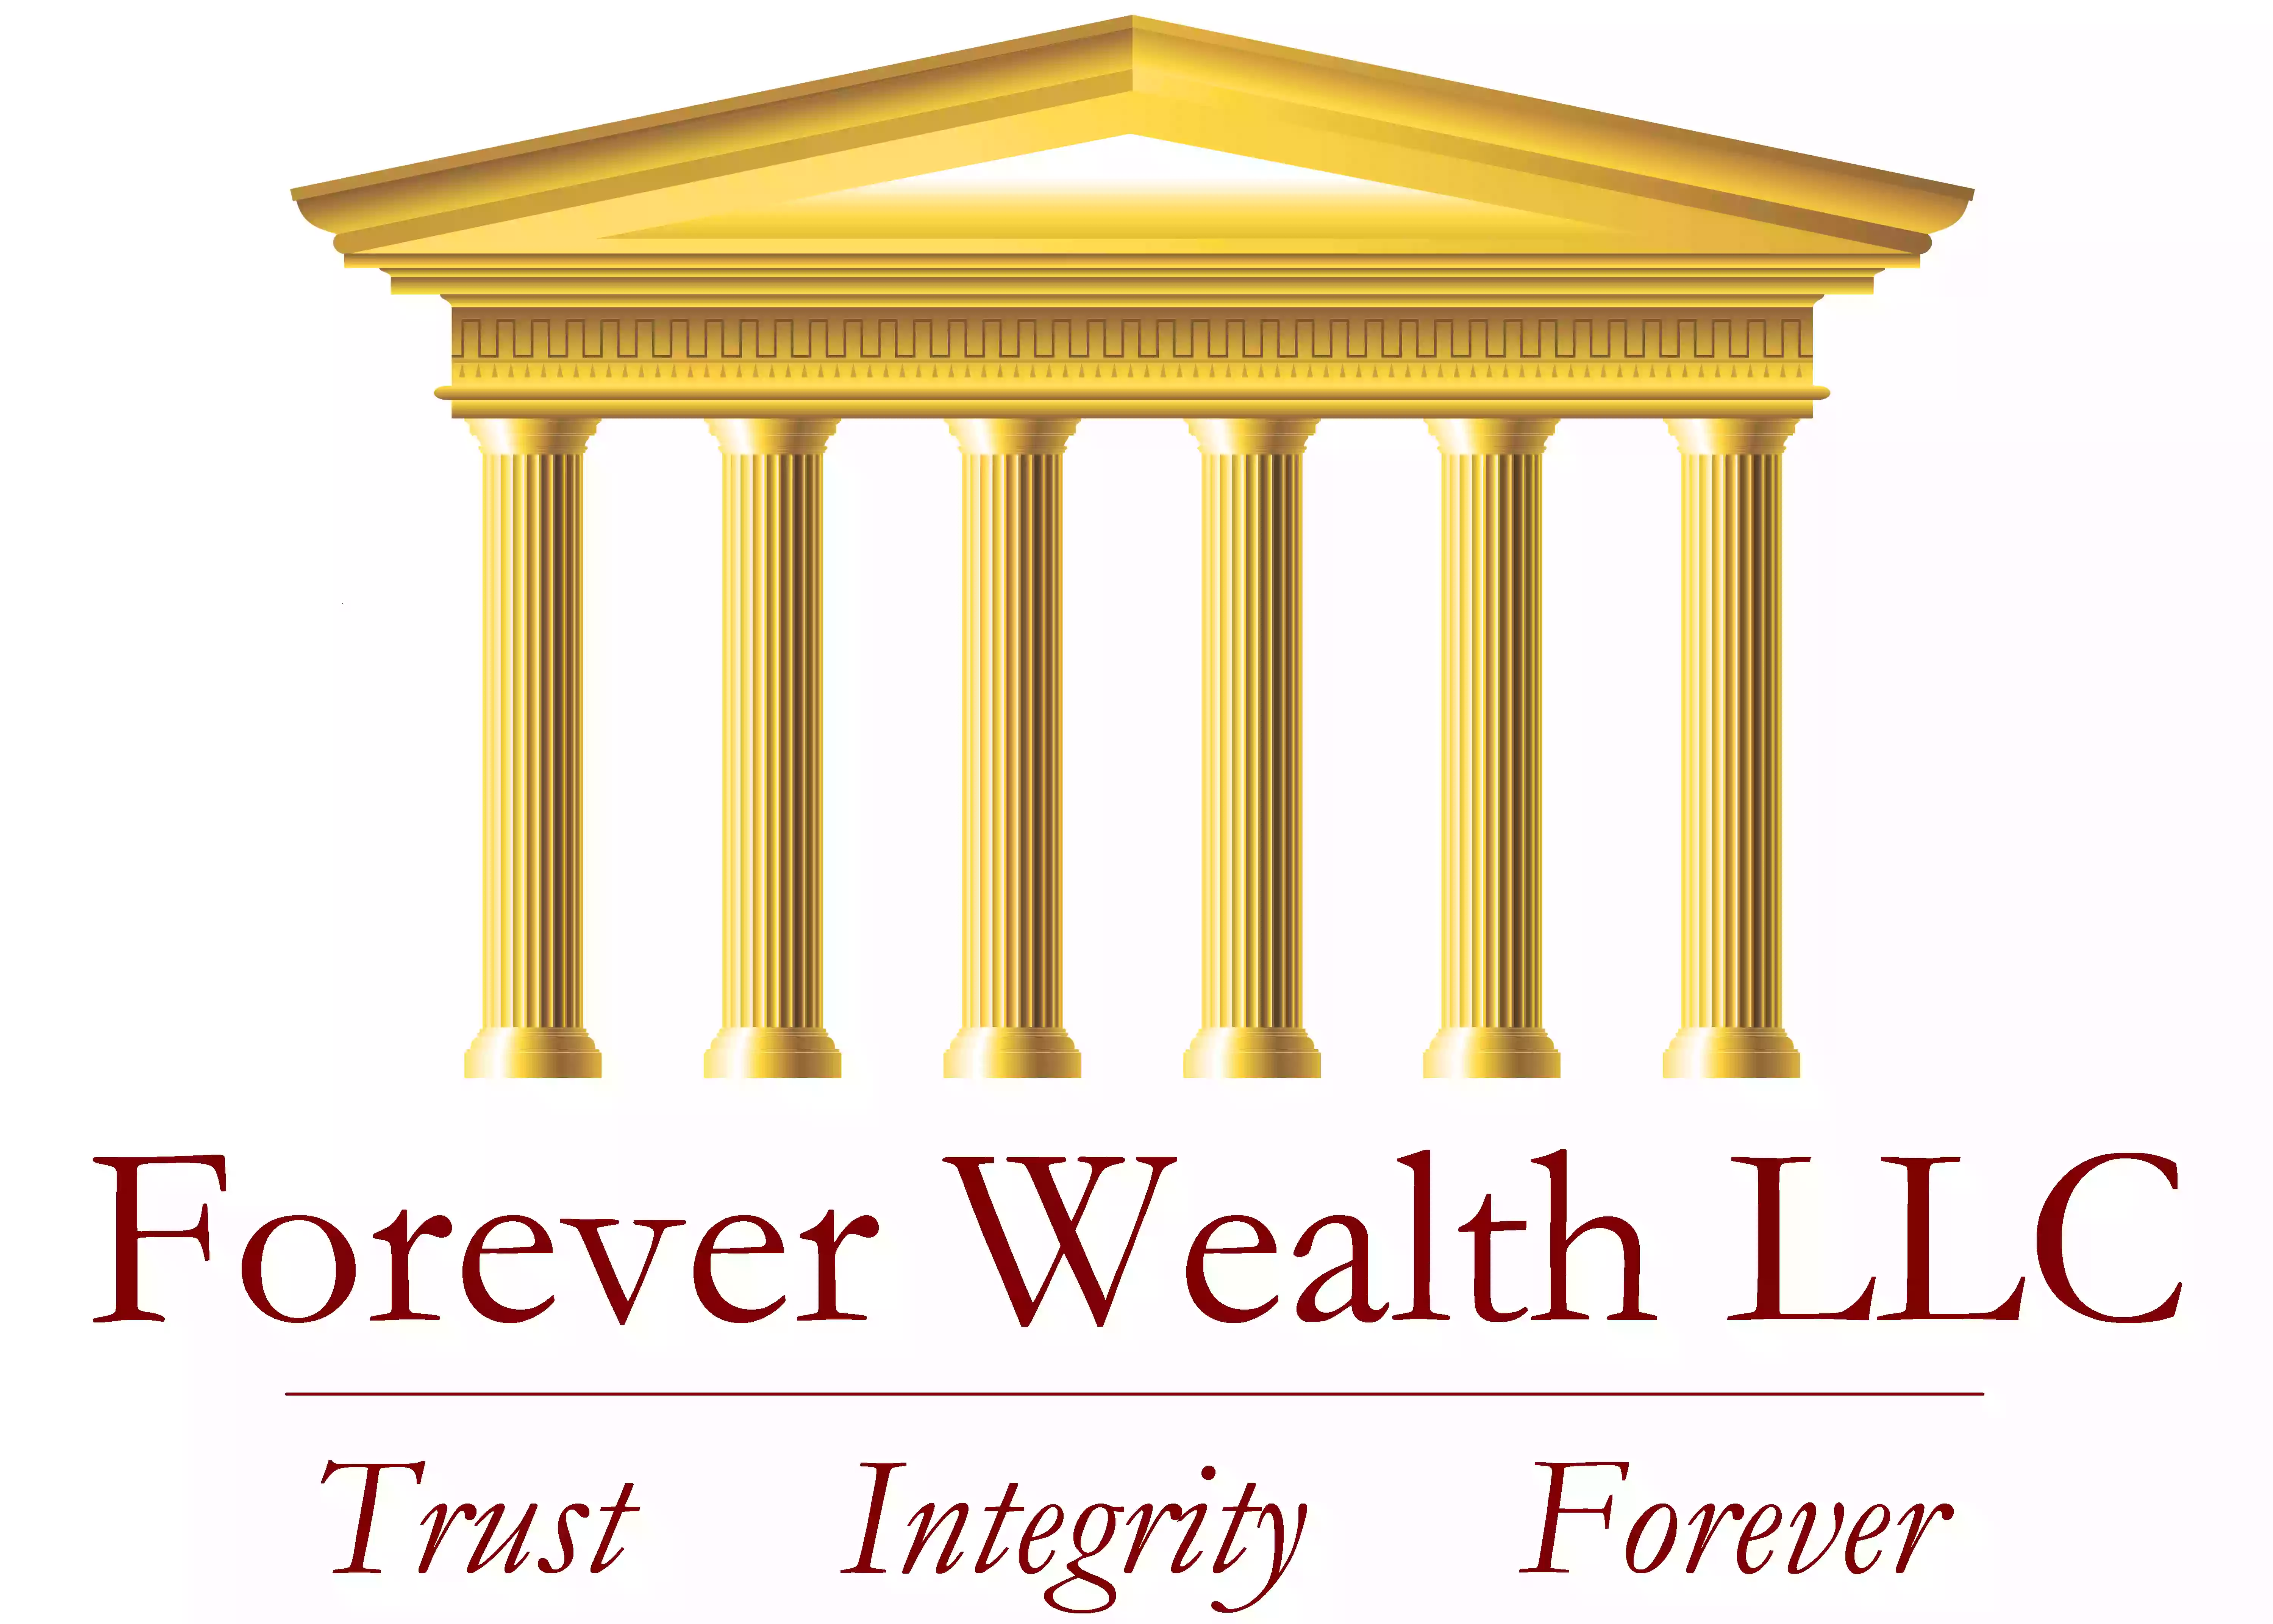 Forever Wealth LLC